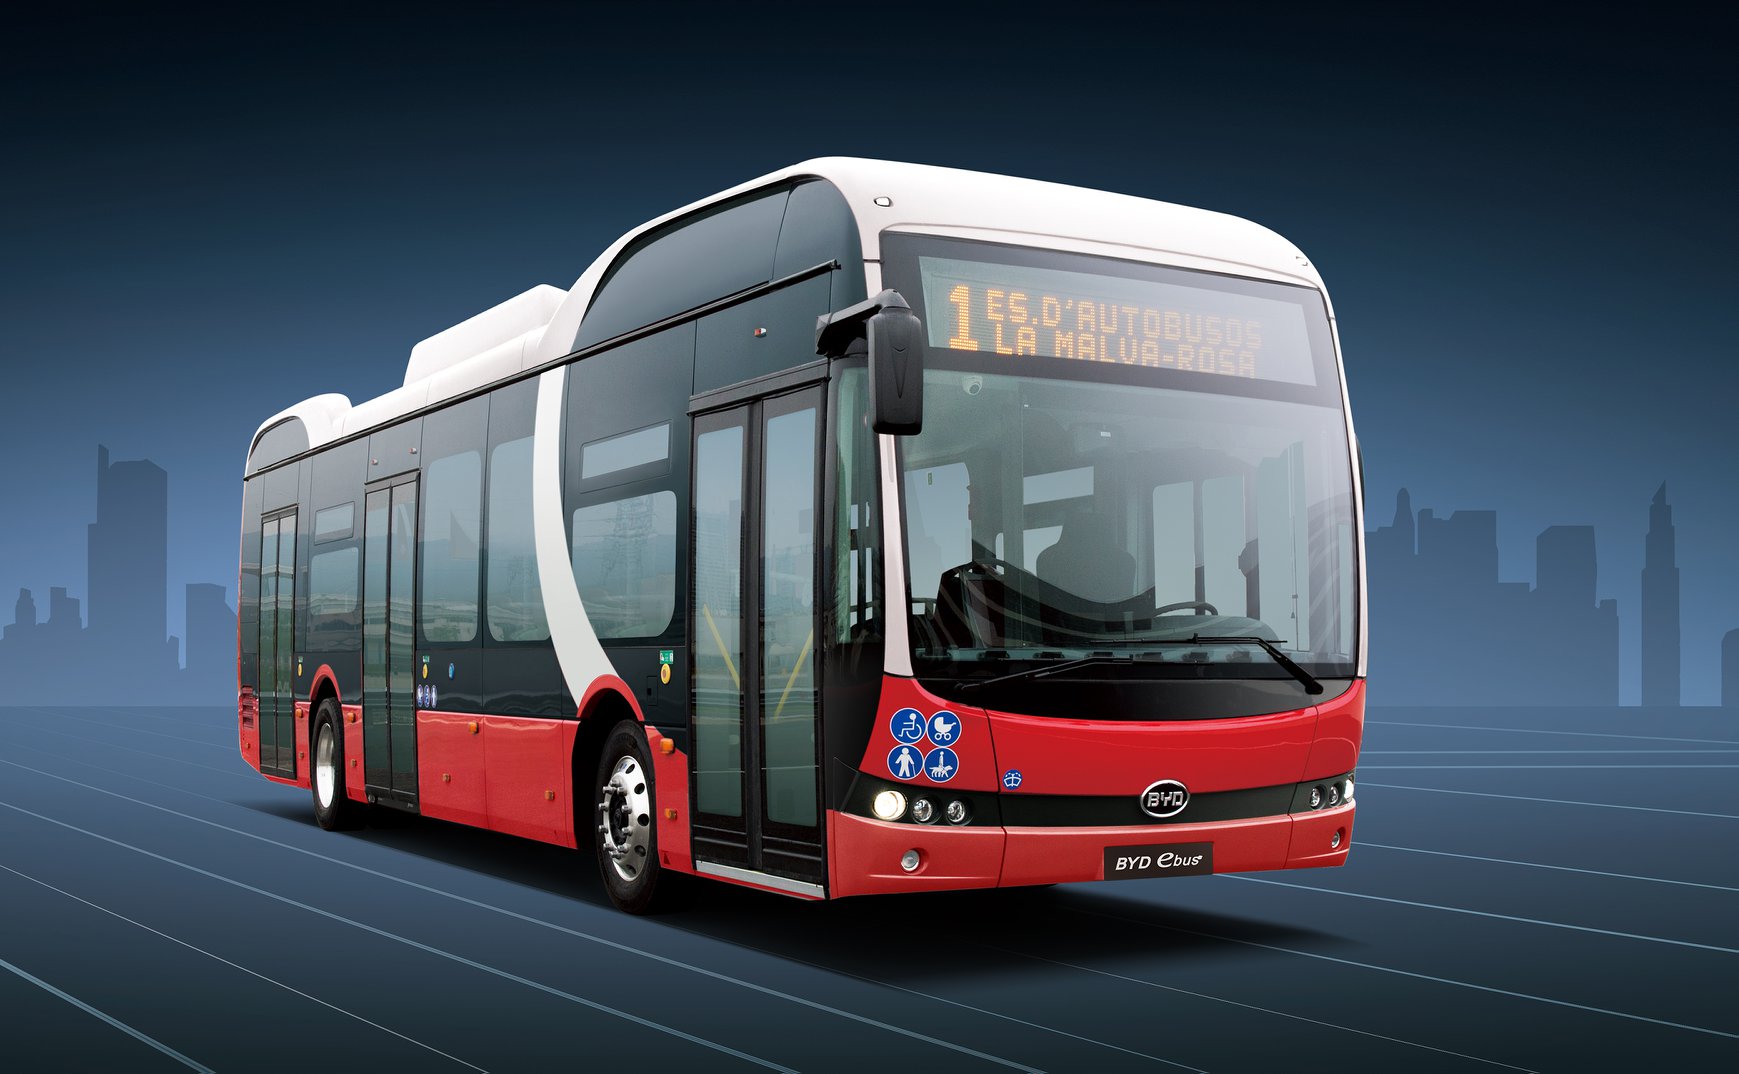 Ηλεκτρικά λεωφορεία: Η ανεπαρκής προσφορά της BYD, τα διαχρονικά προβλήματα και η μεταφορά του διαγωνισμού!